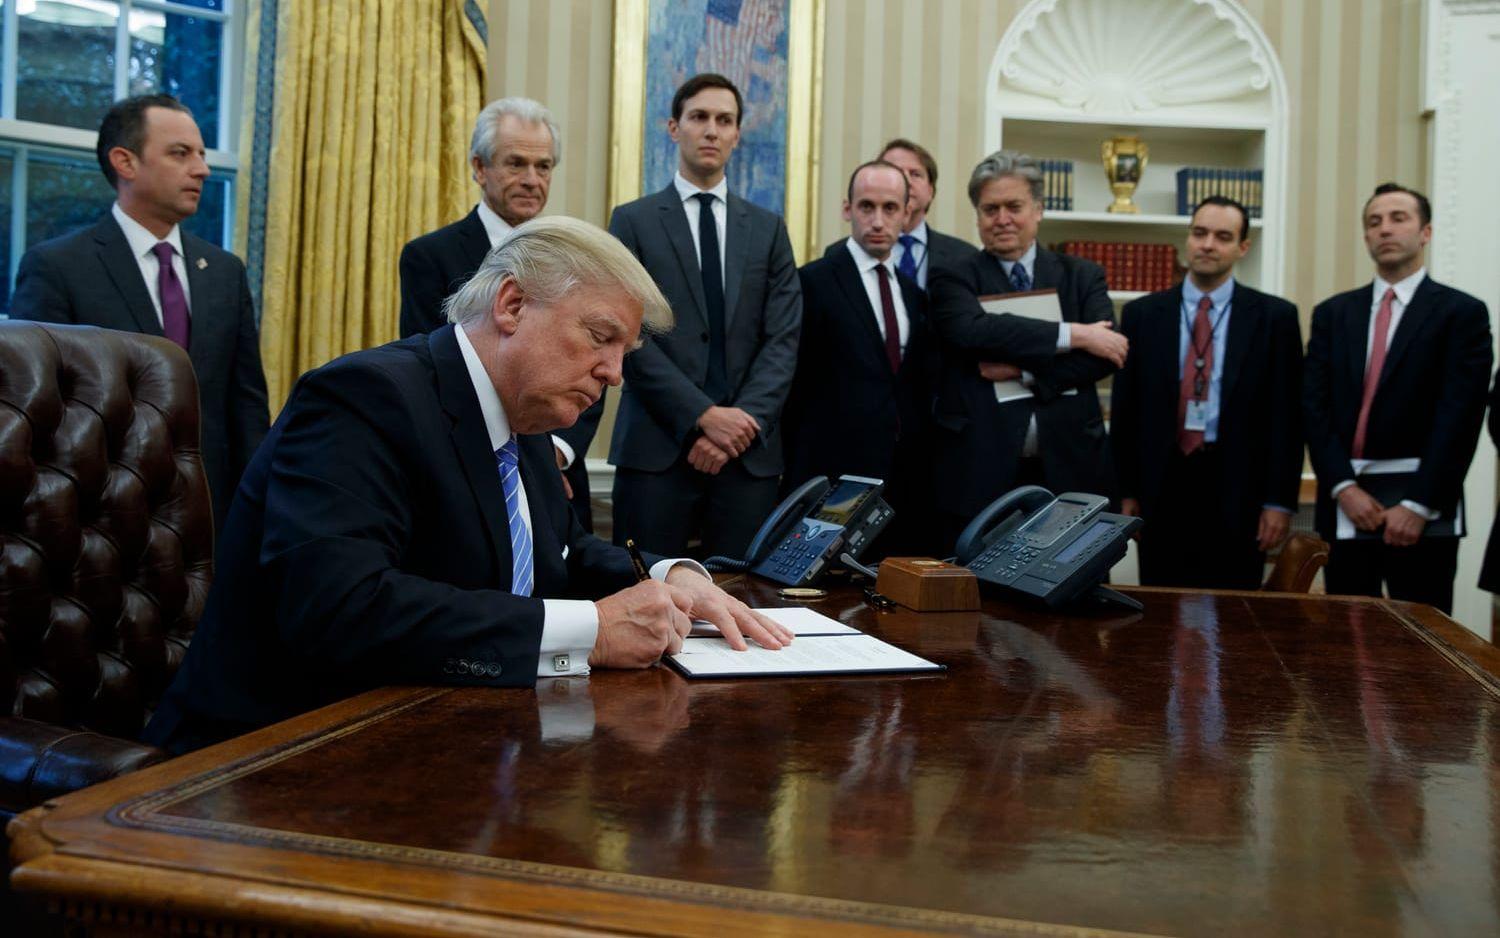 23 JANUARI: Trump säger att USA drar sig ur förhandlingarna om frihandelsavtalet TPP. Foto: TT